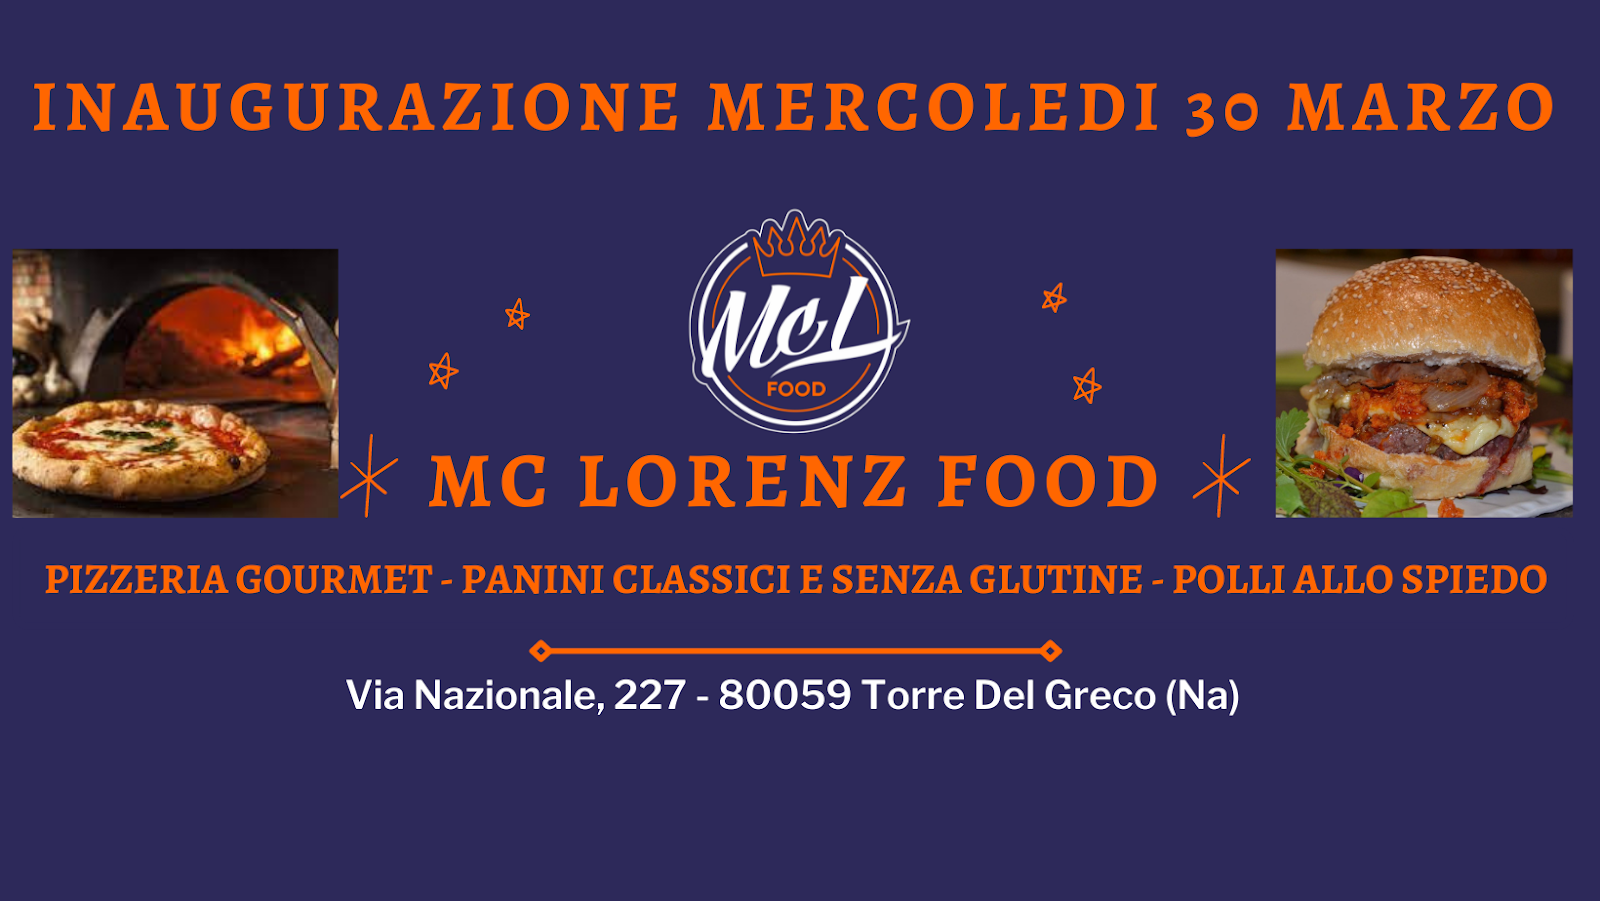 Foto di Mc Lorenz Food - Pizza Gourmet - Panini classici e senza glutine - Polli allo spiedo